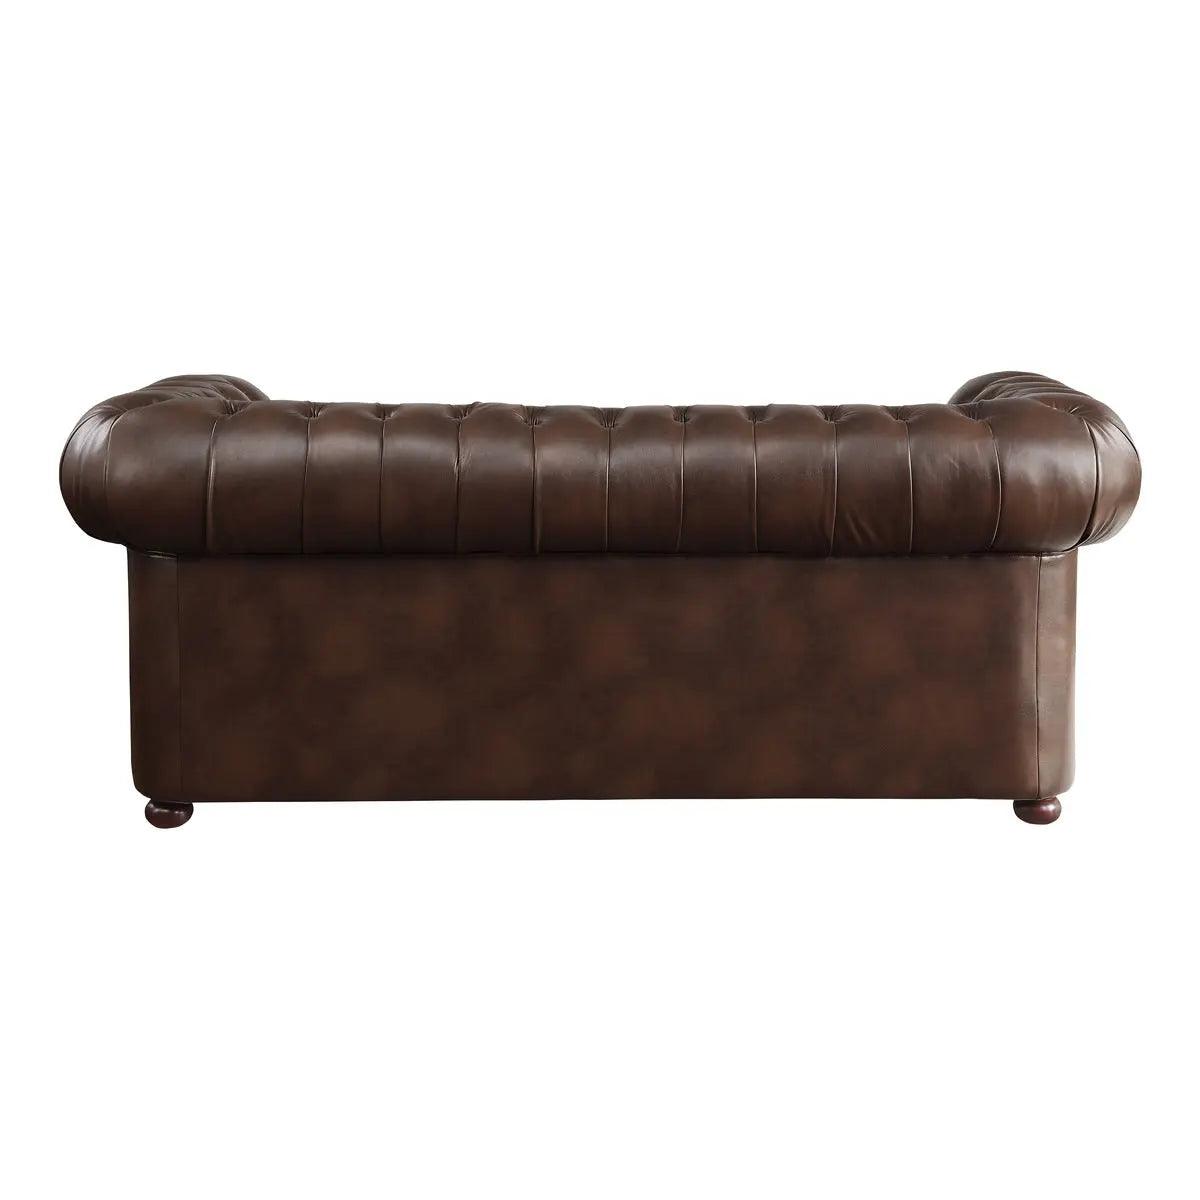 Tiverton Sofa by Homelegance Homelegance Furniture